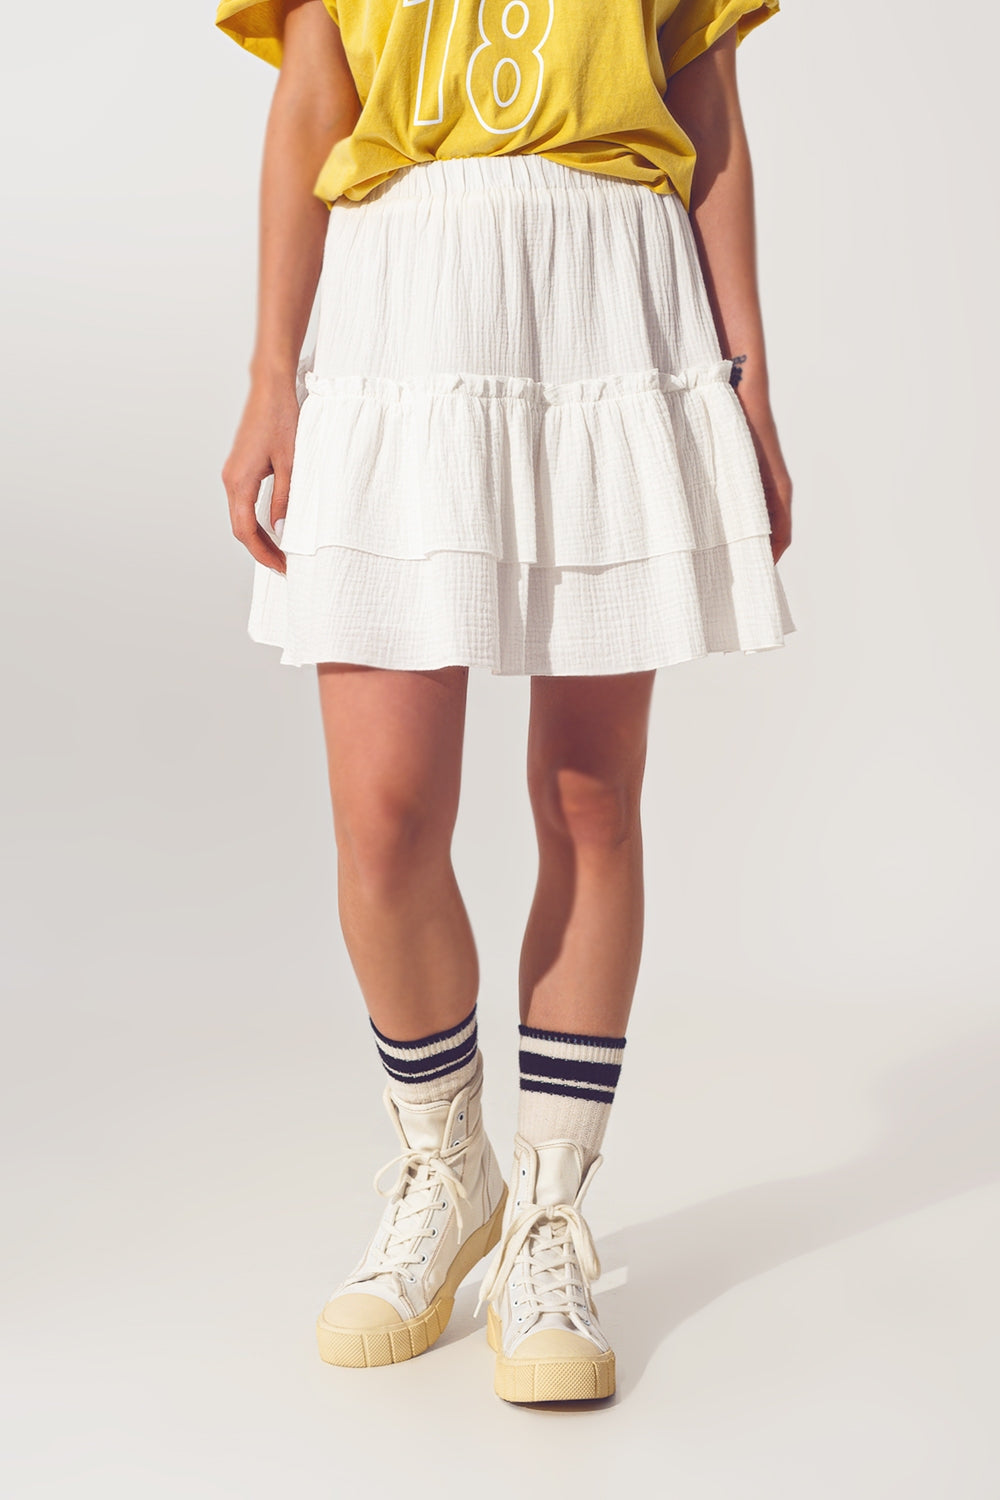 Q2 Textured Ruffle Mini Skirt in White